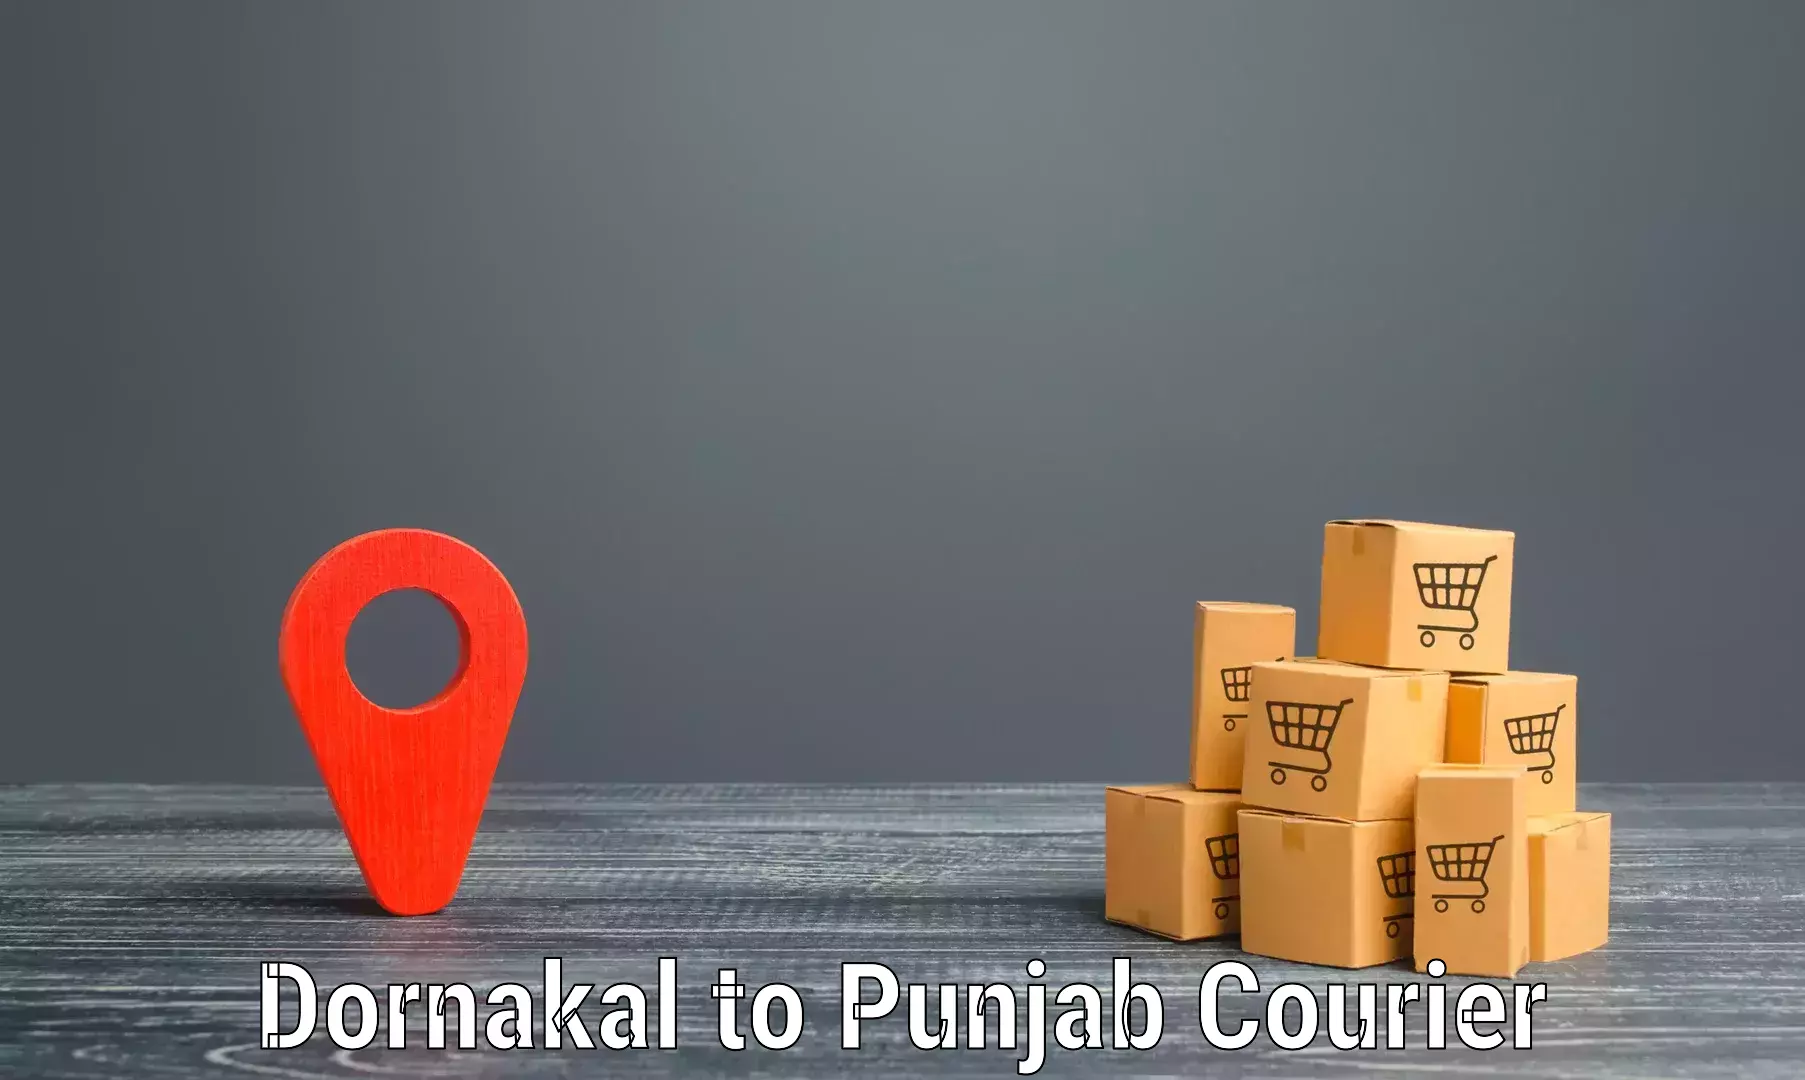 Affordable parcel service Dornakal to Dhuri